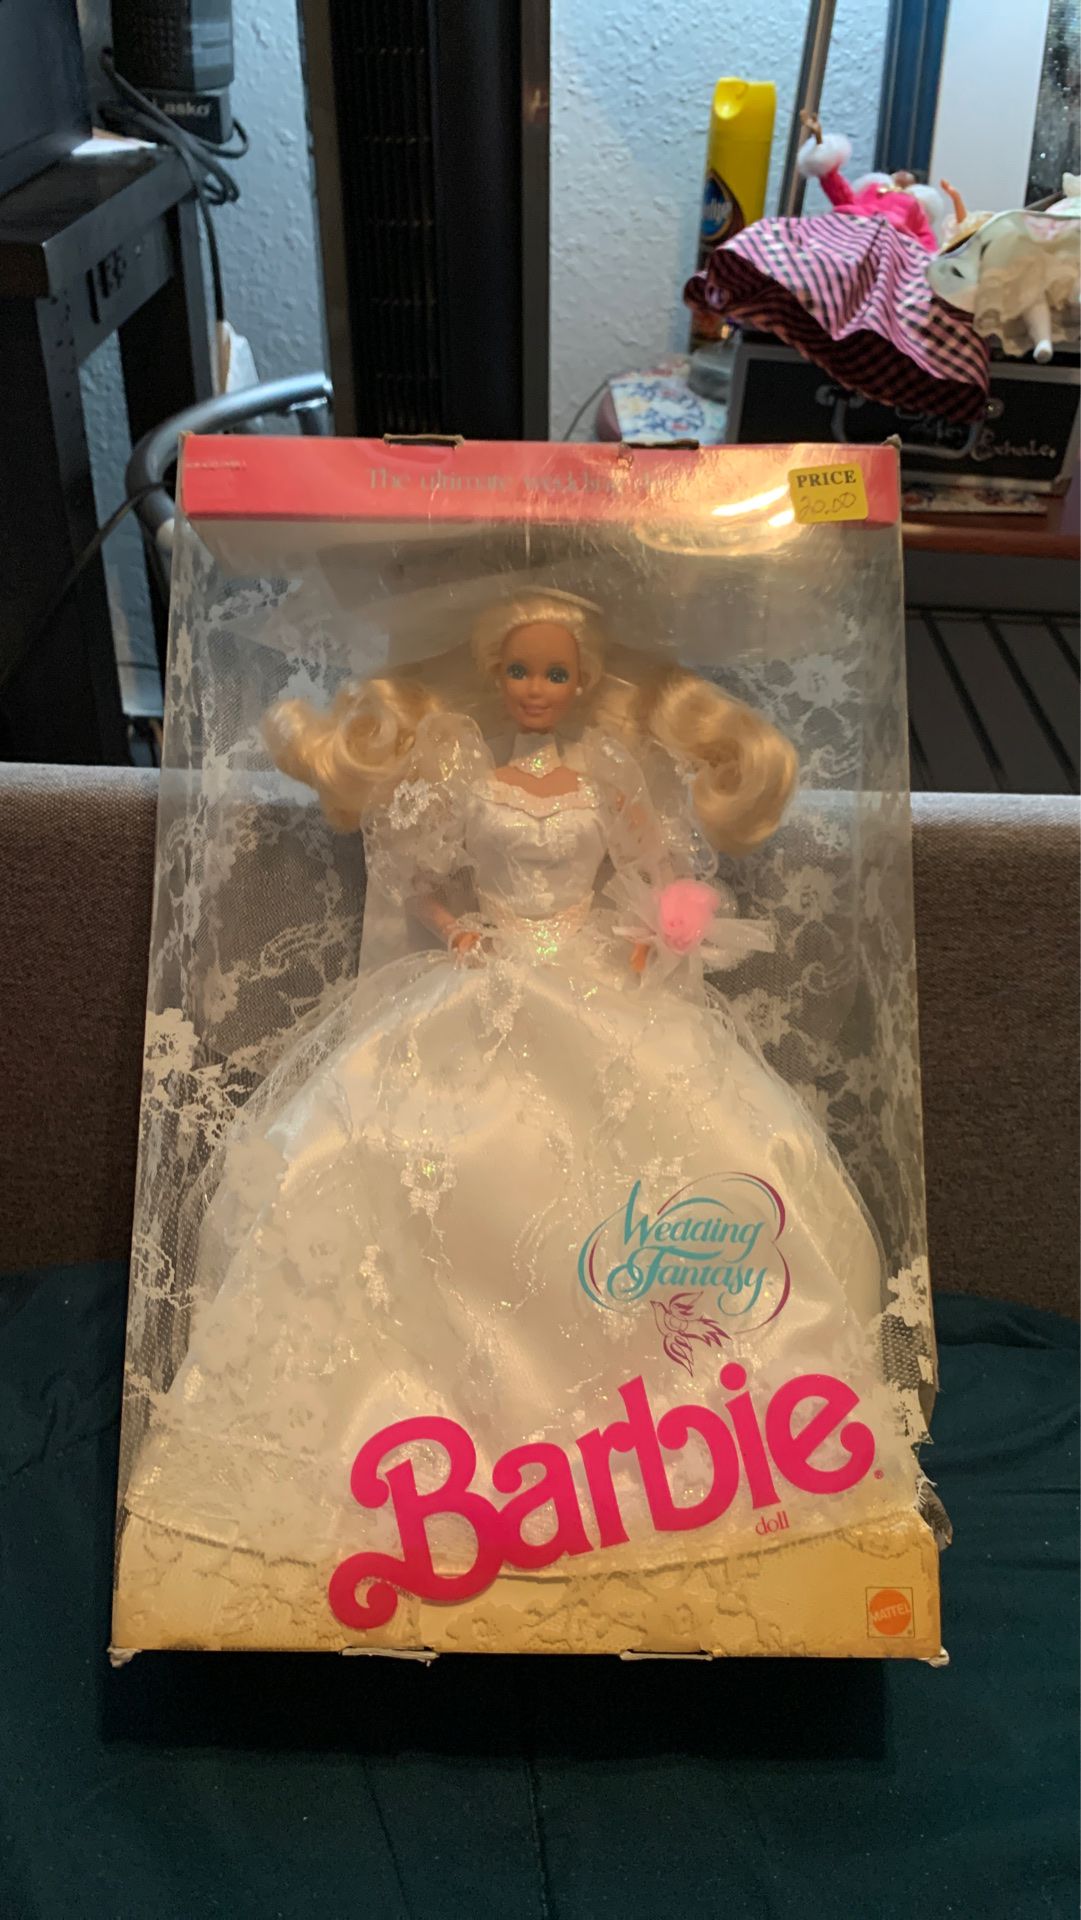 Wedding fantasy Barbie